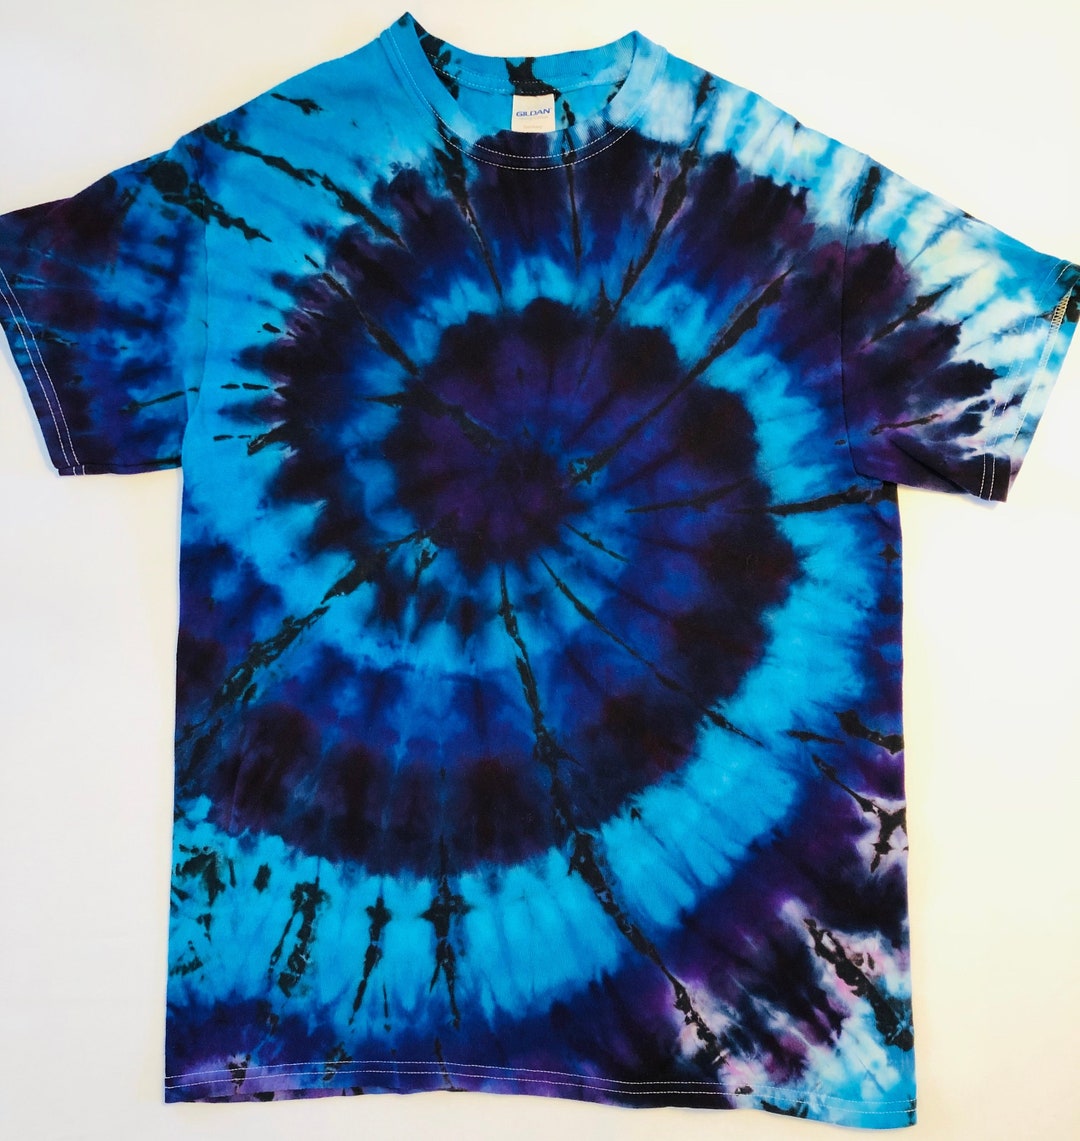 Blues/black Spiral Ice Dye Tie Dye Shirt - Etsy